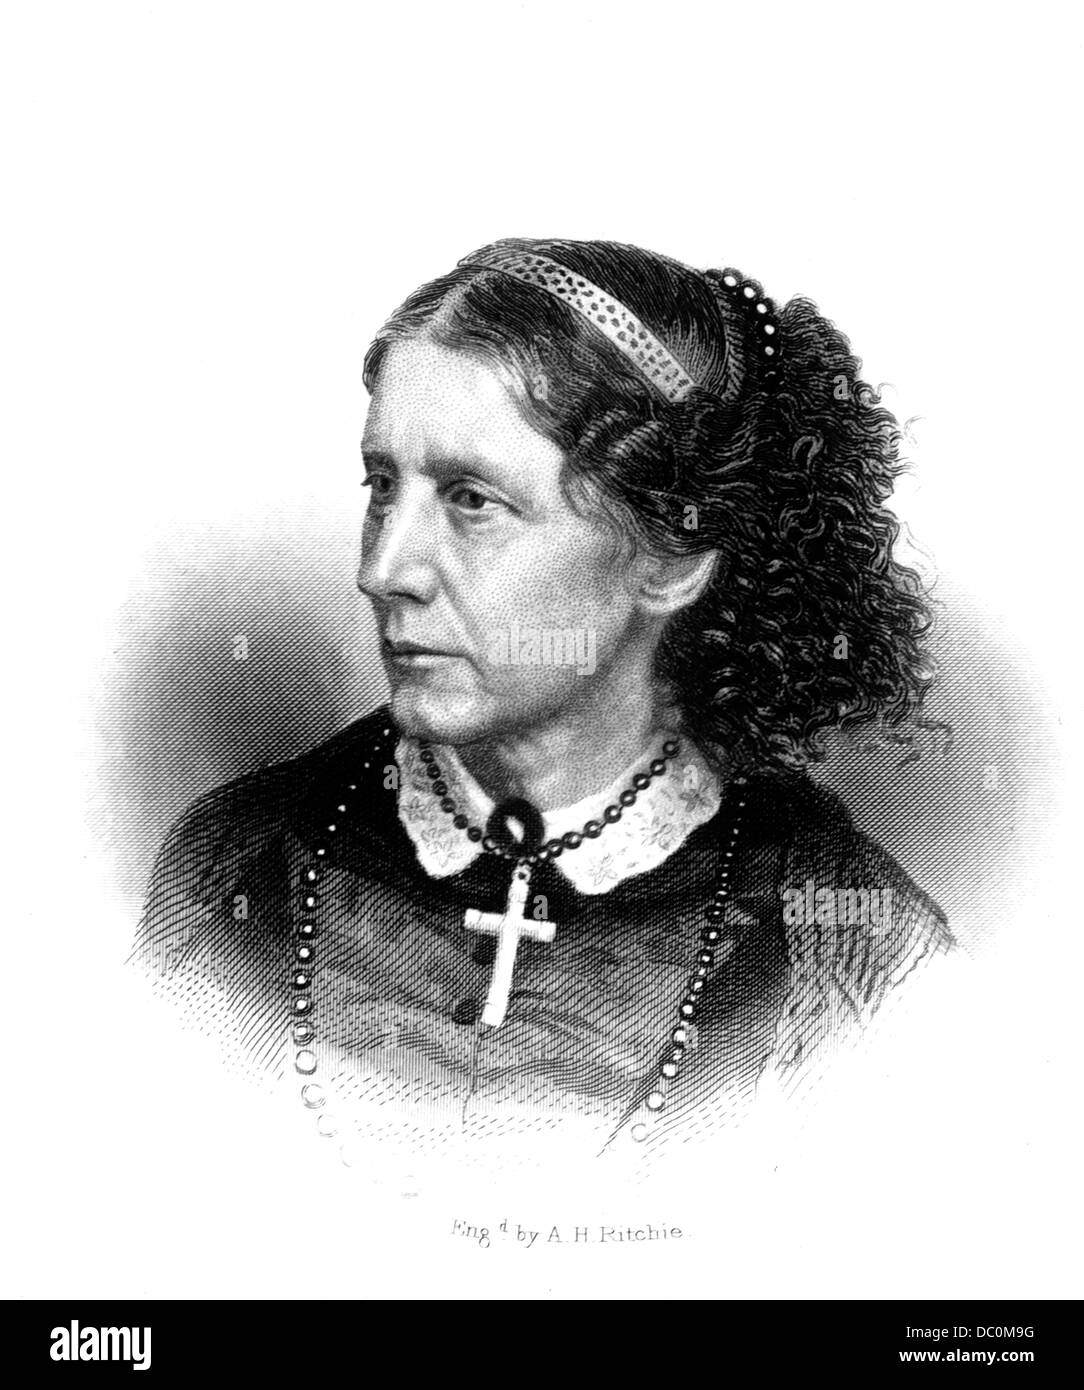 1800s ritratto di Harriet Beecher Stowe romanziere umanitario abolizionista autore della capanna dello zio Tom Foto Stock